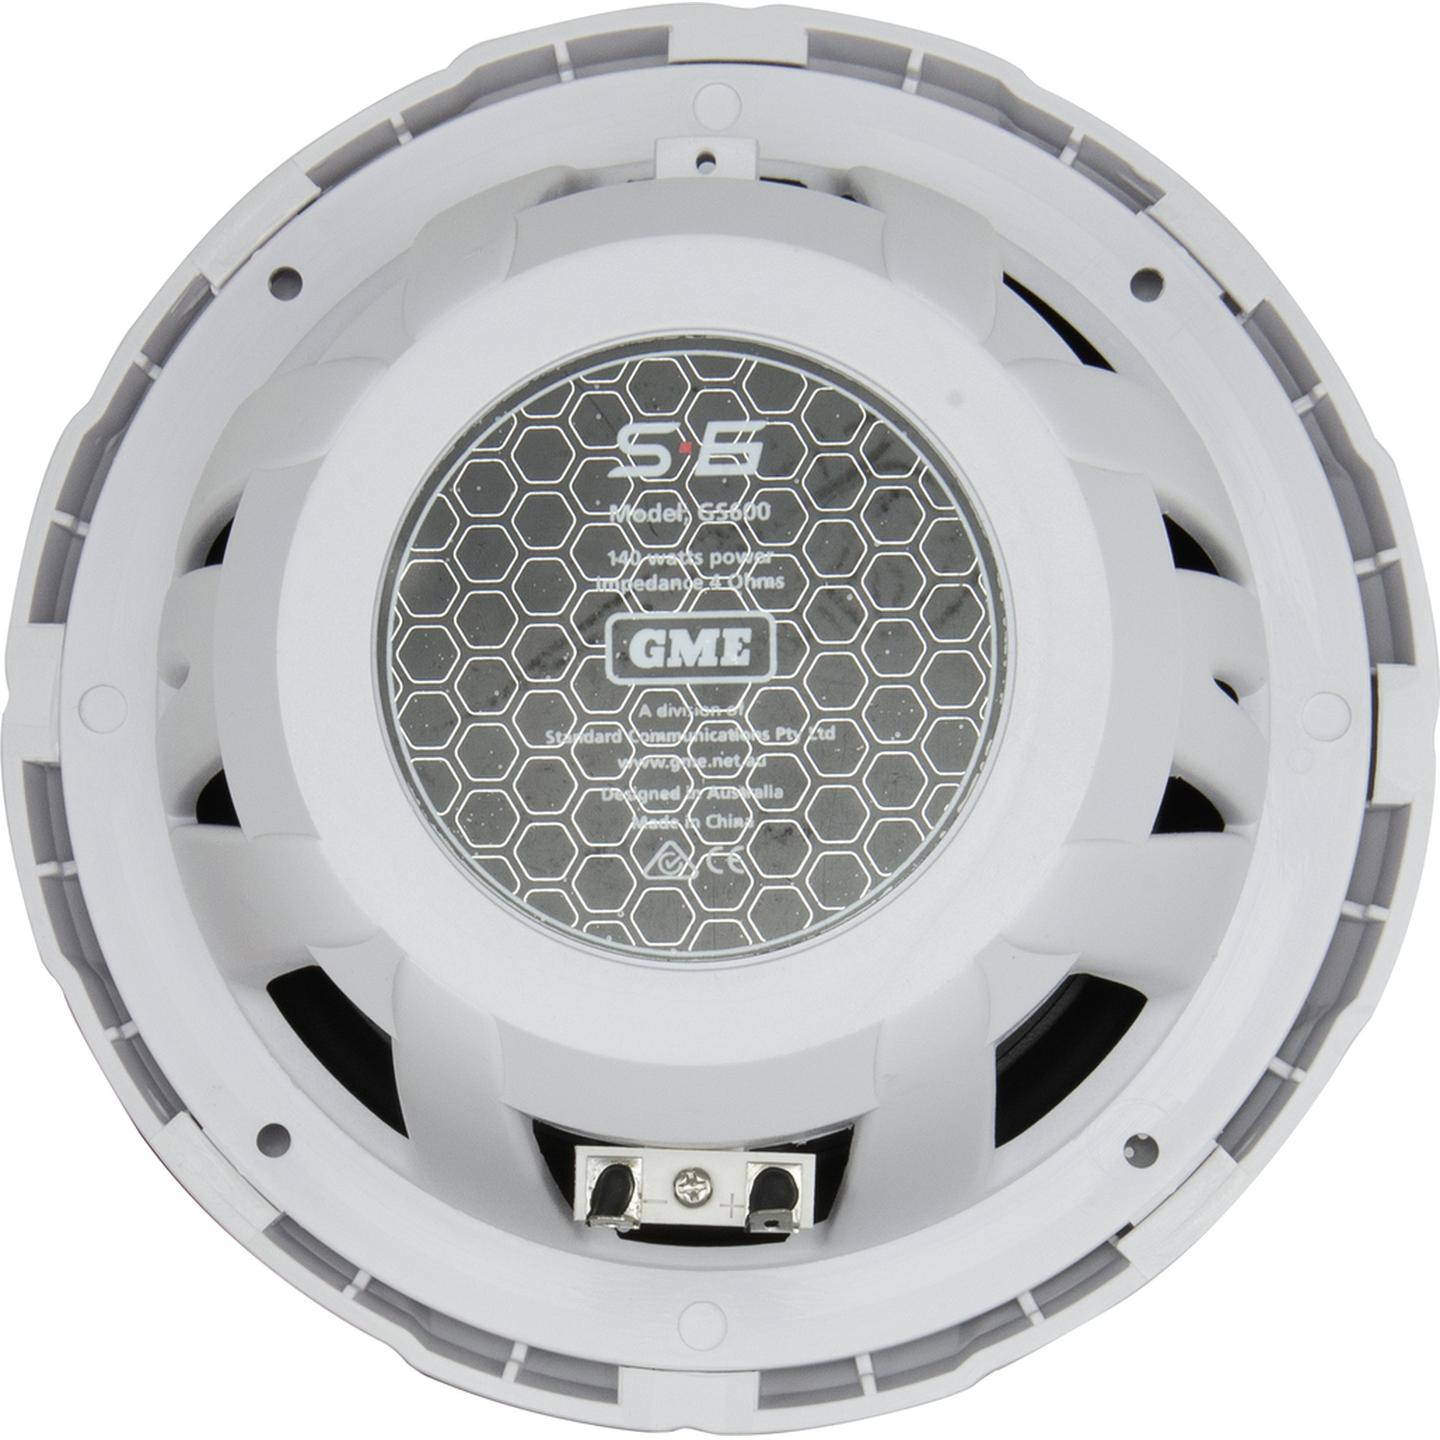 GME 140 Watt IP54 Marine Flush Mount Speakers - 180mm Pair - White